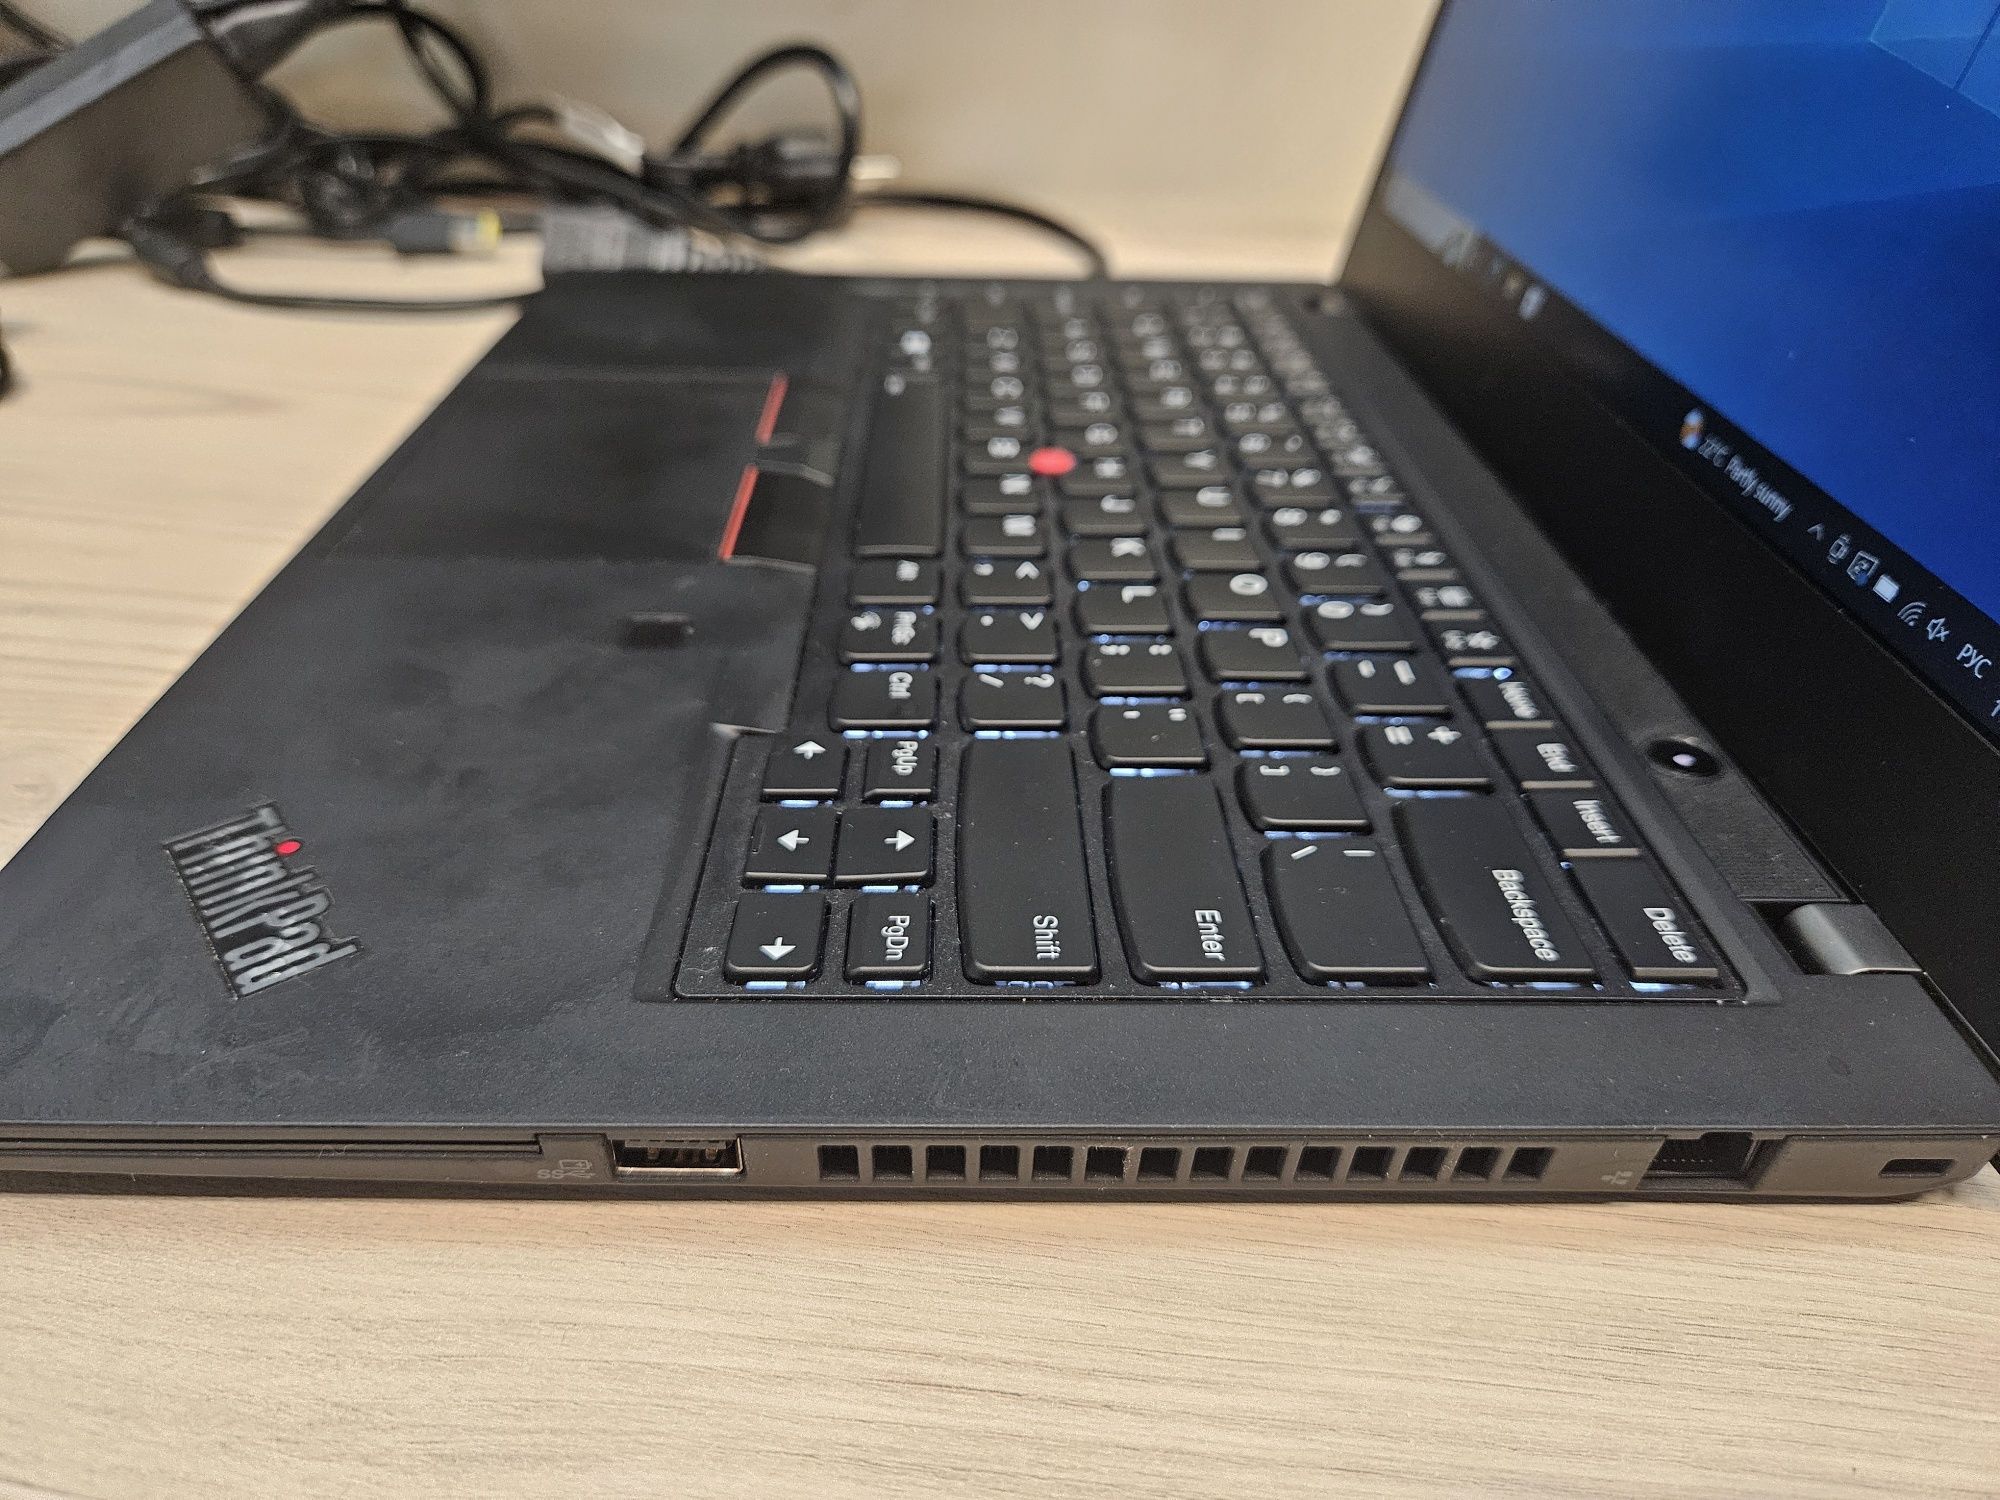 Lenovo ThinkPad T495 Ryzen5 3500U/16Gb DDR4/ 512Gb m.2 nvme/Vega 8/14"